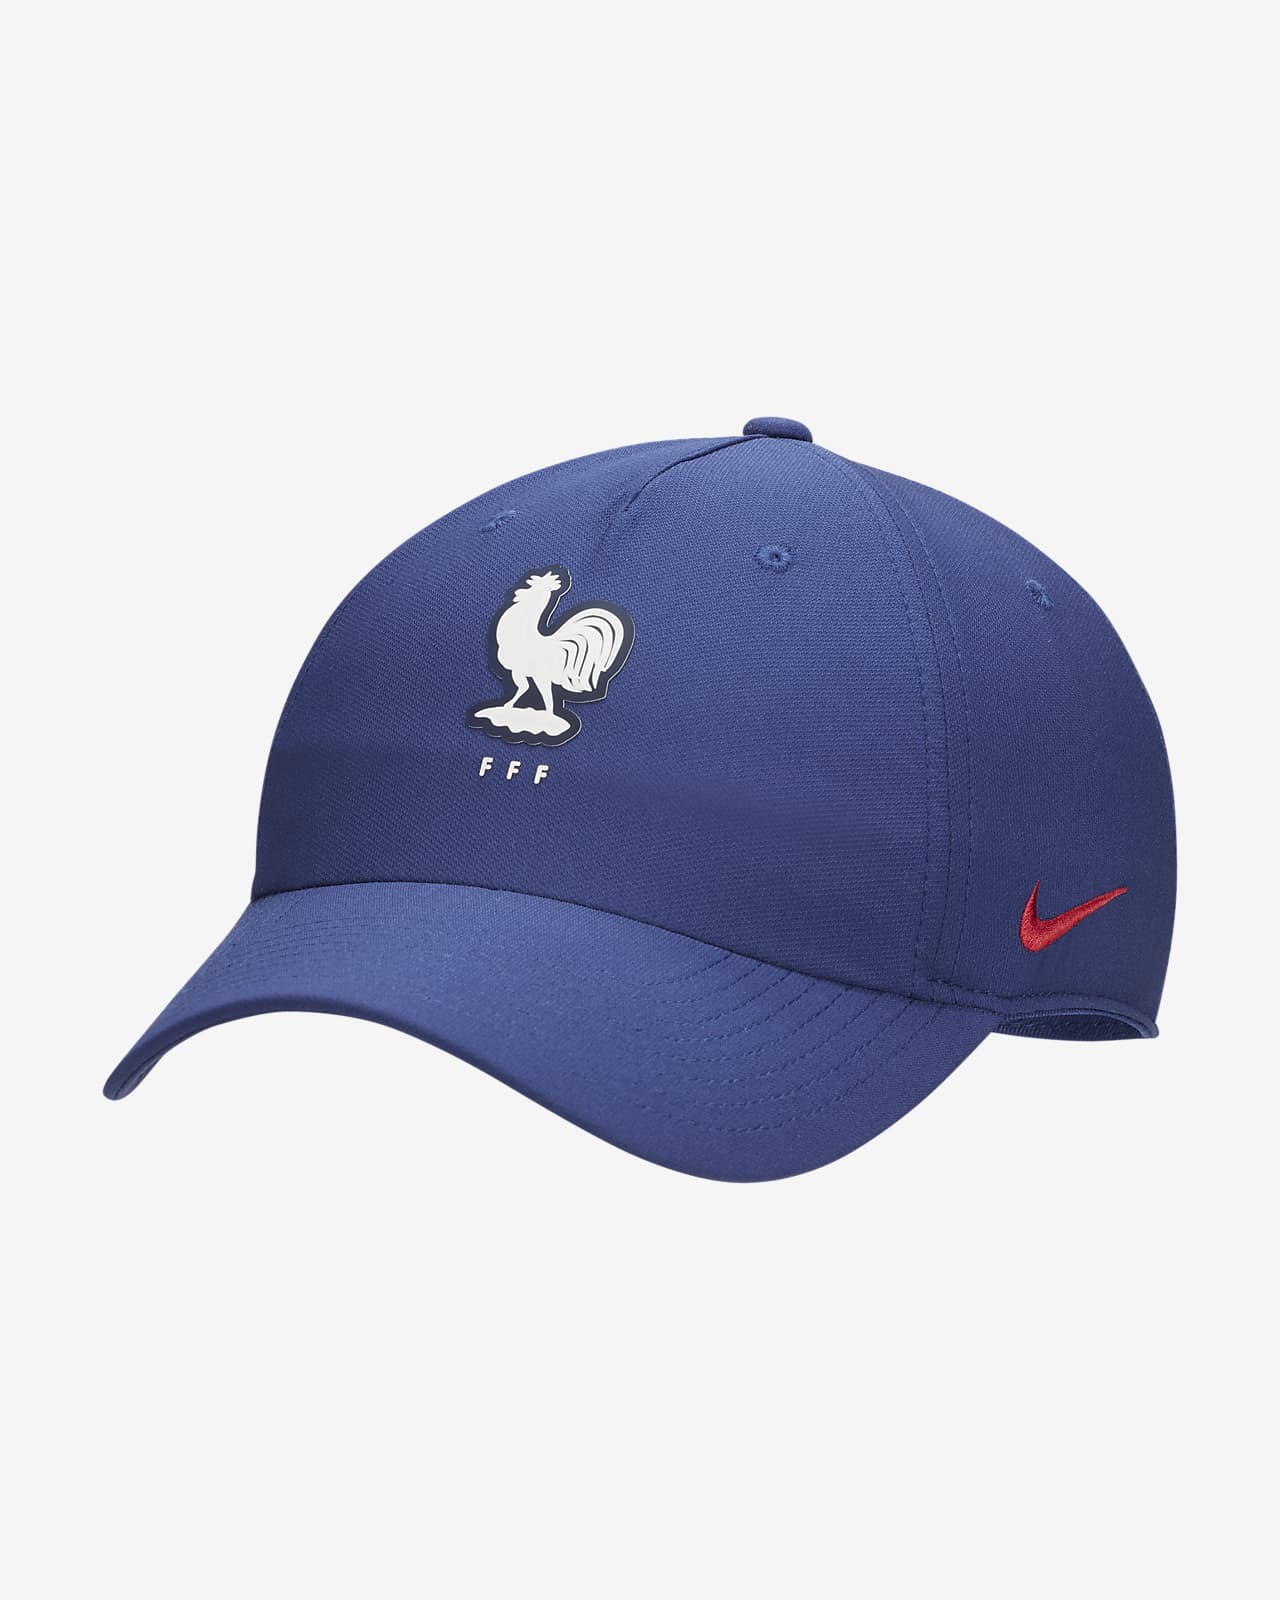 FFF Club Adjustable Nike Cap